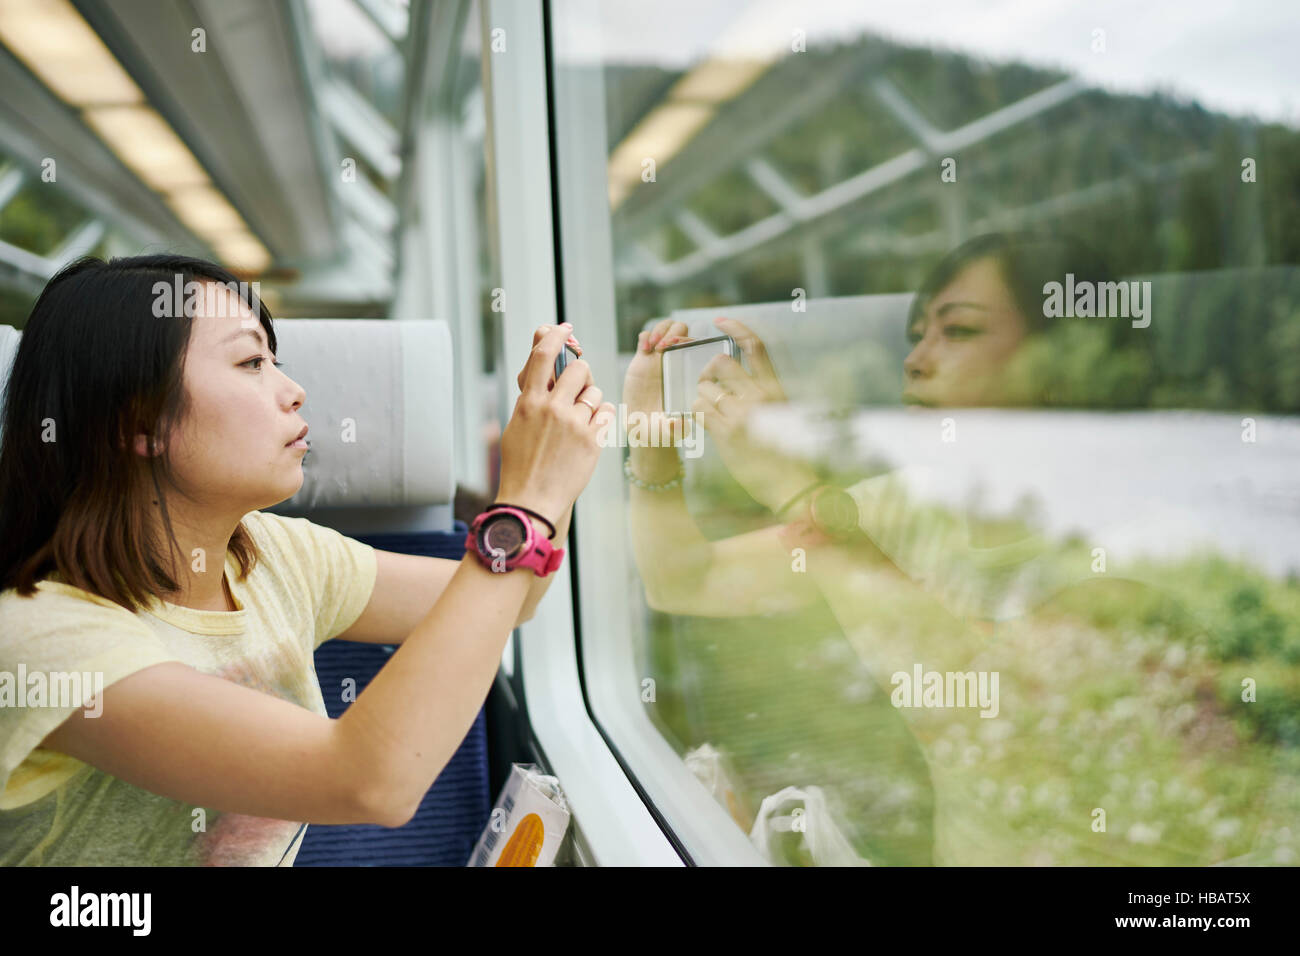 Female tourist photographing through passenger train window, Chur, Switzerland Stock Photo